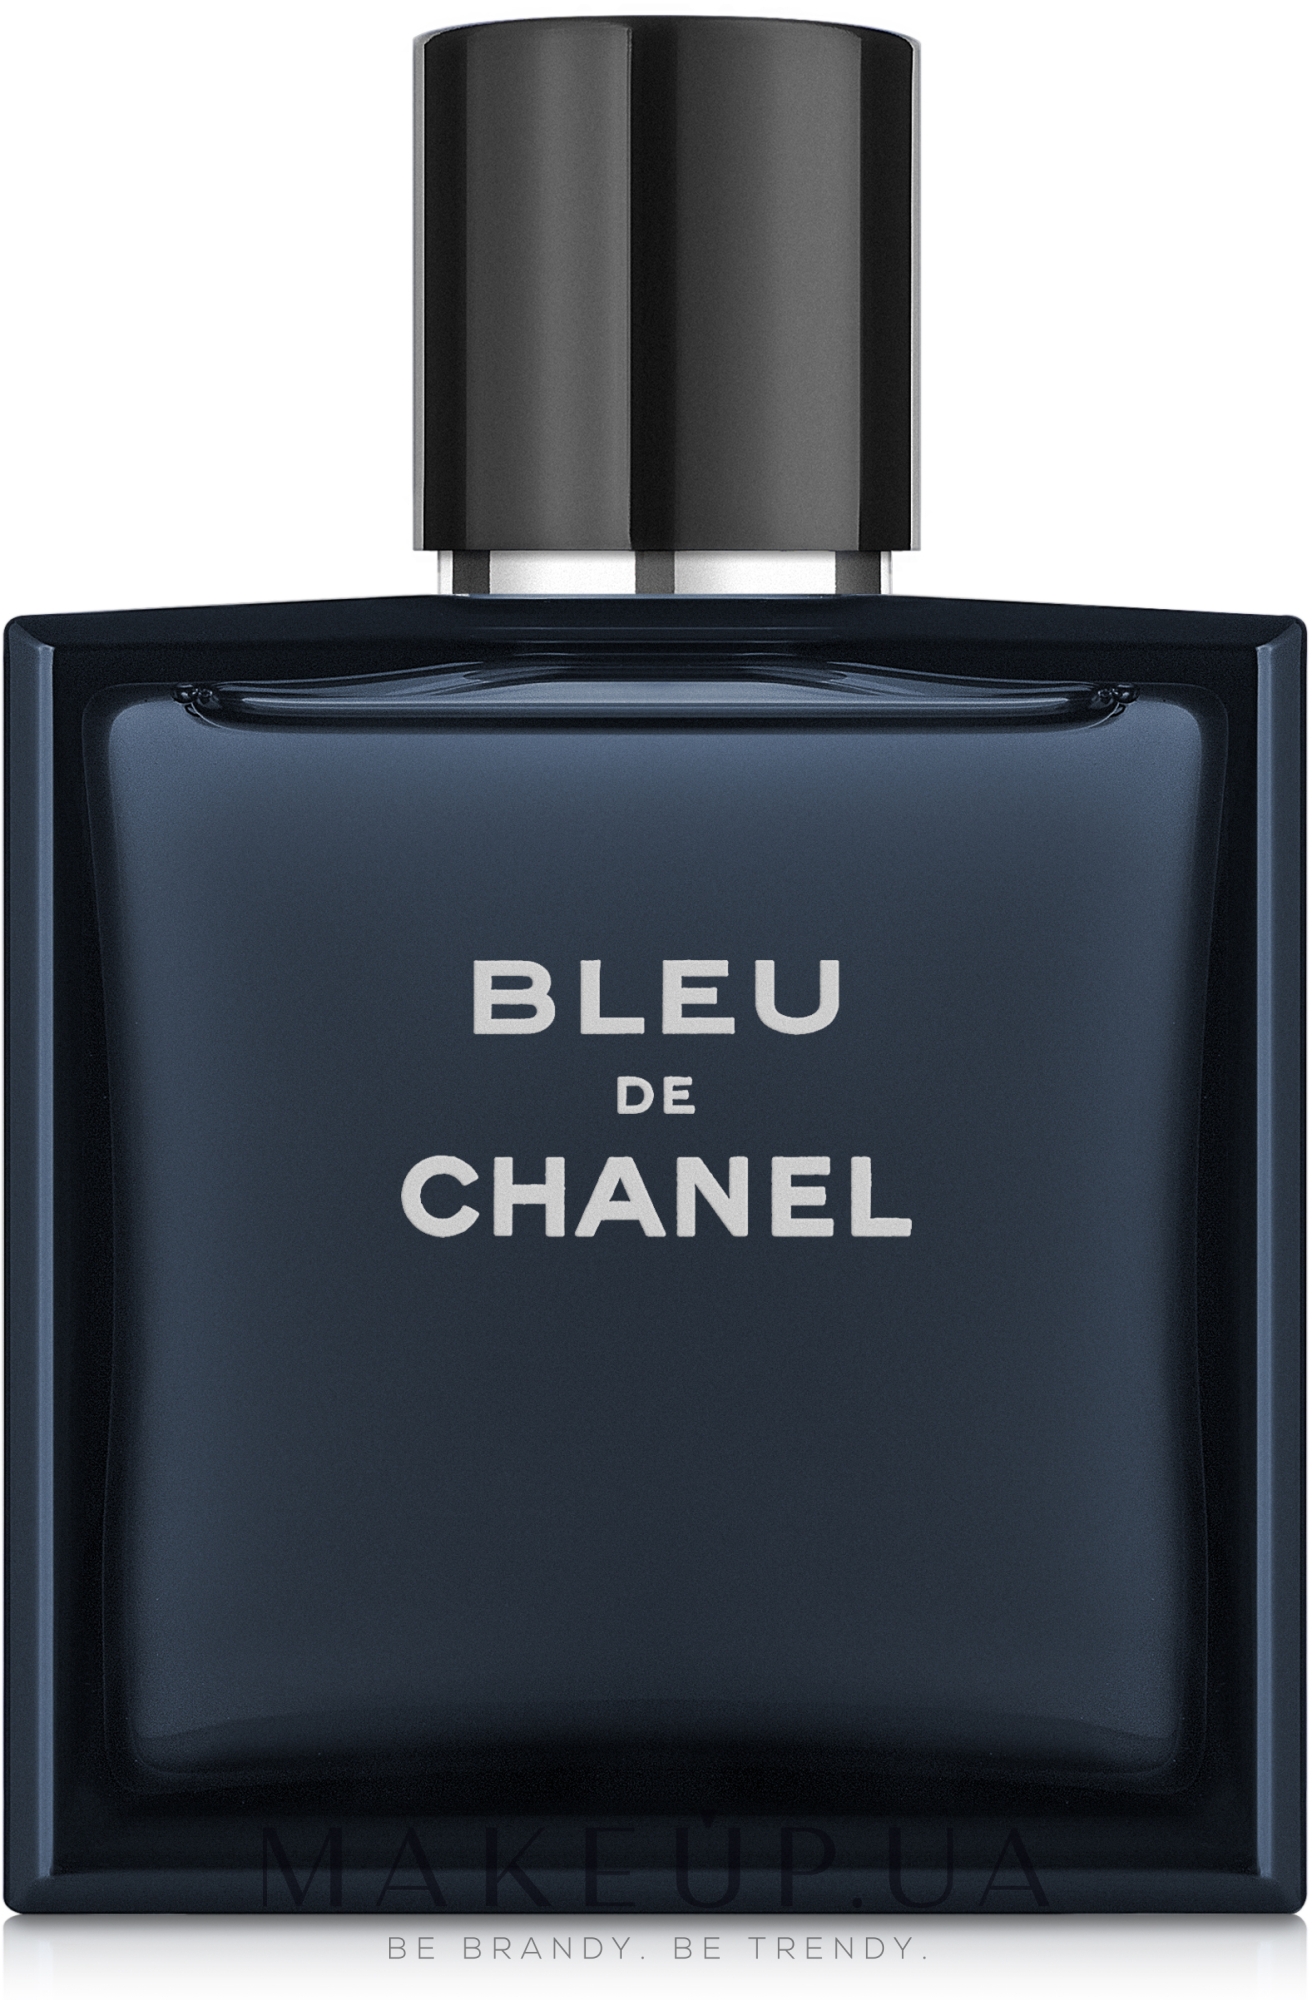 Купить духи Chanel Bleu de Chanel 50ml  мужские в Дубае ОАЭ Широкий  выбор парфюмерии от Chanel в Эмиратах